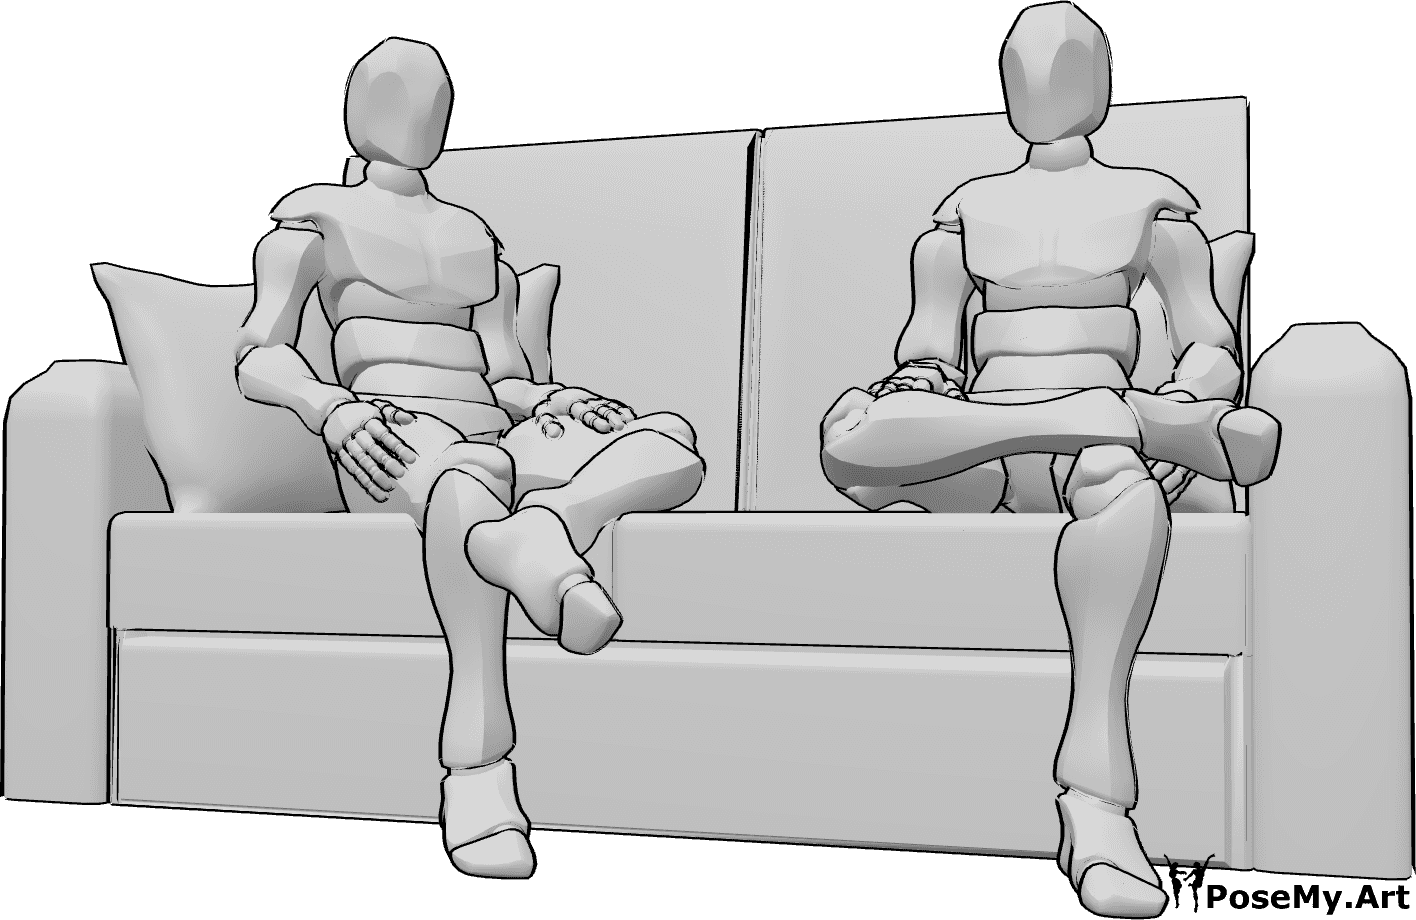 Posen-Referenz- Männchen in sitzender Pose - Zwei Männer sitzen lässig auf der Couch und freuen sich